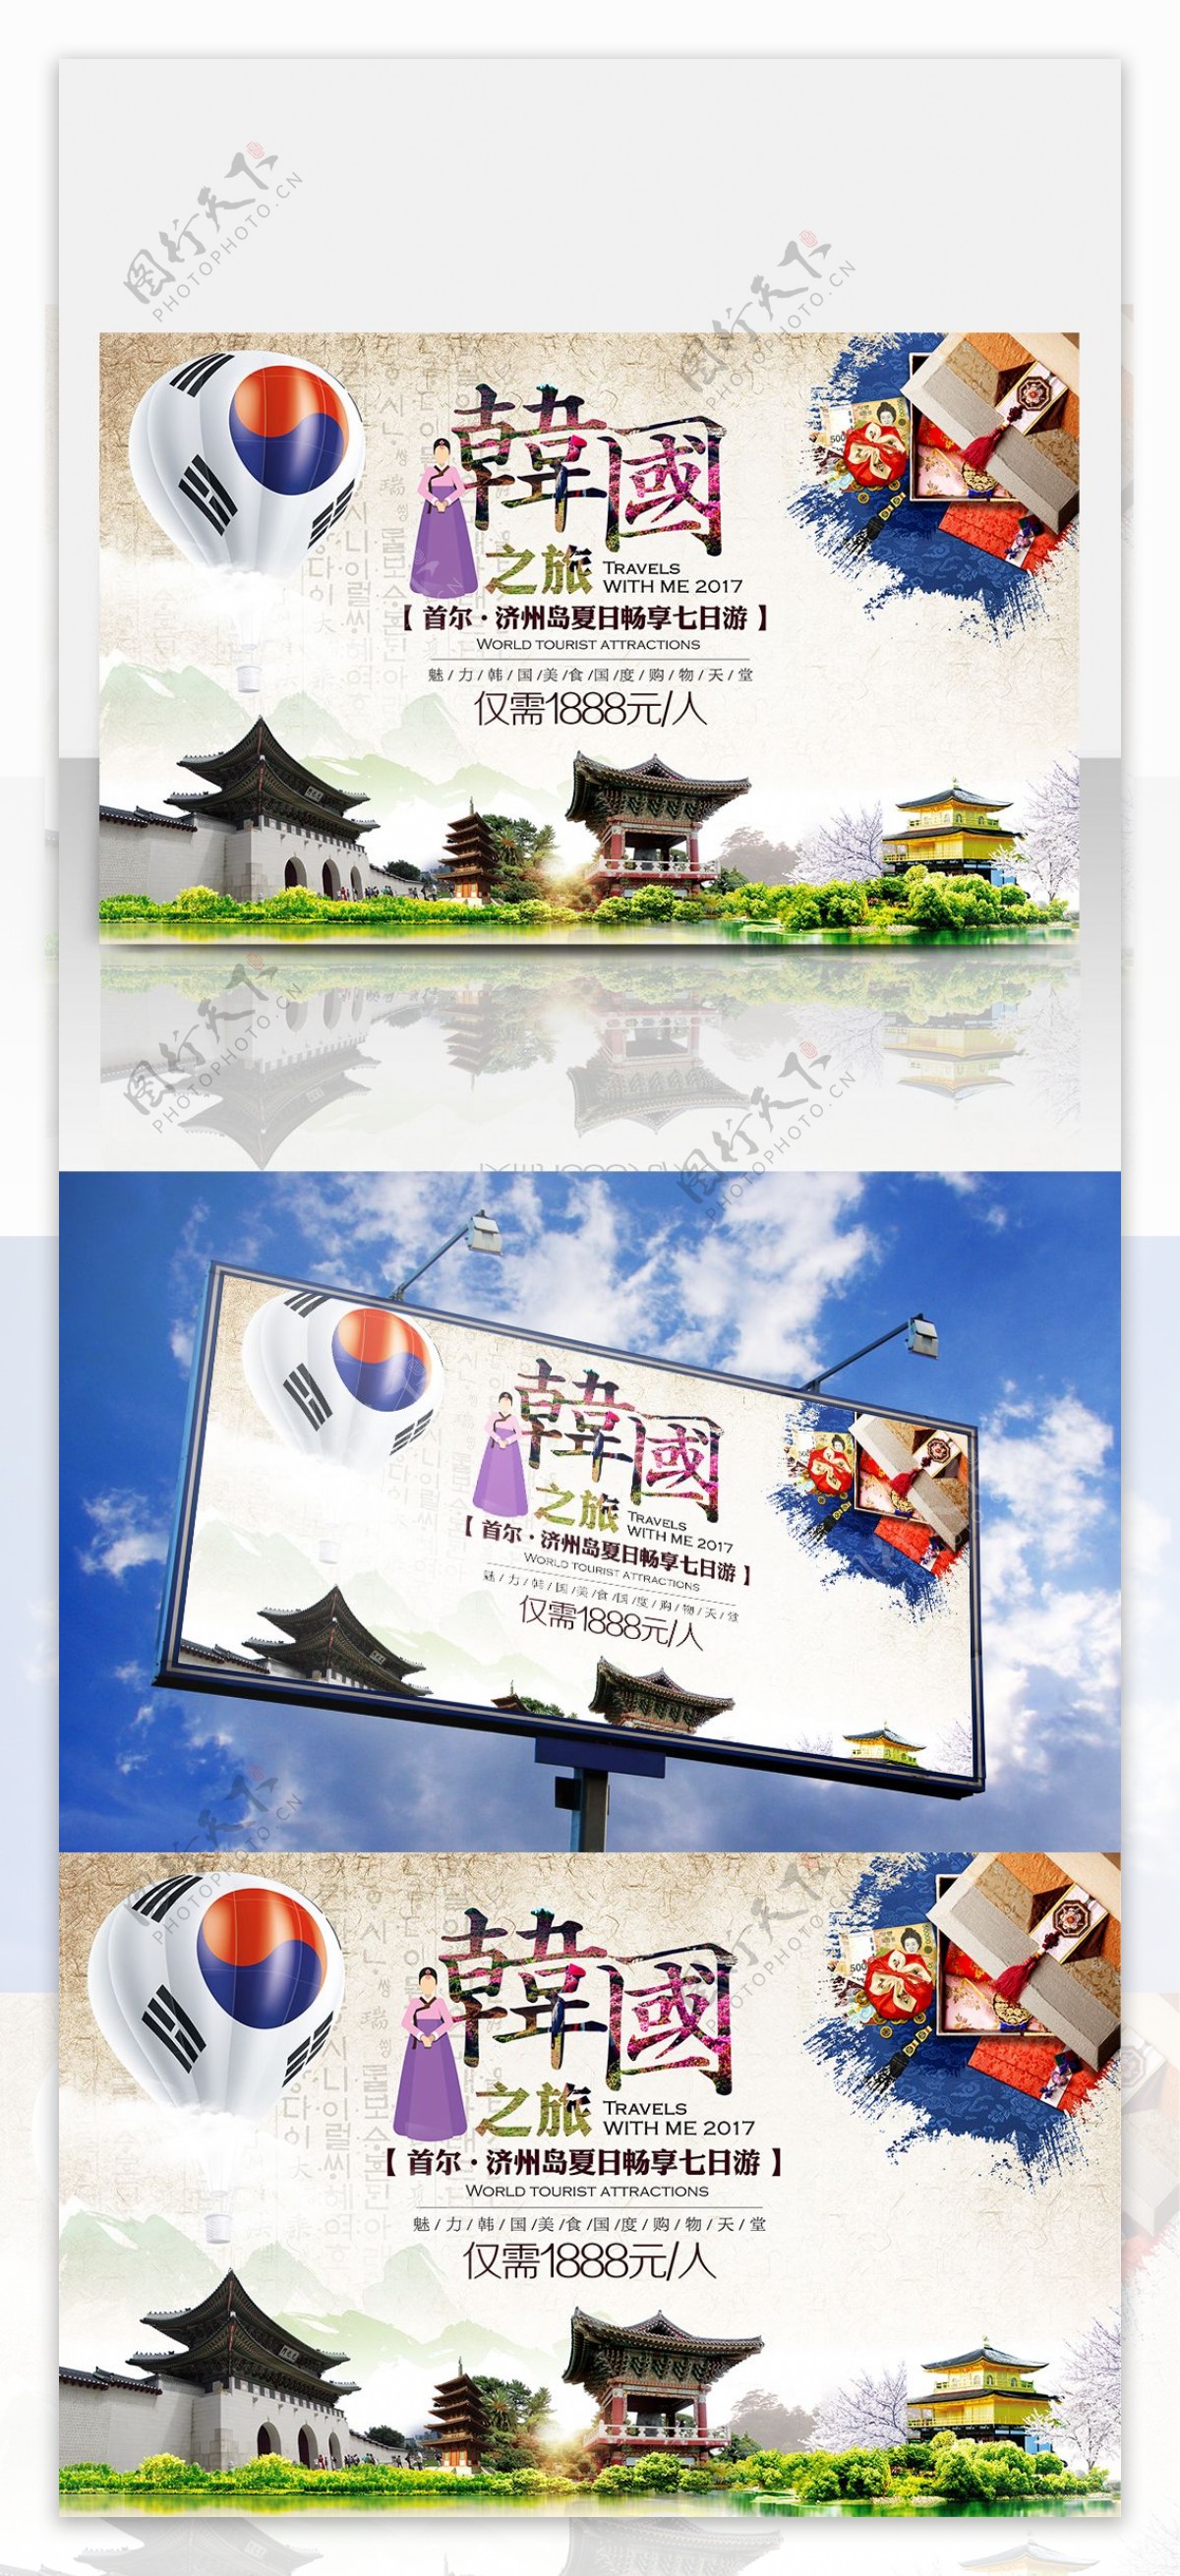 韩国之旅水墨风格旅游海报